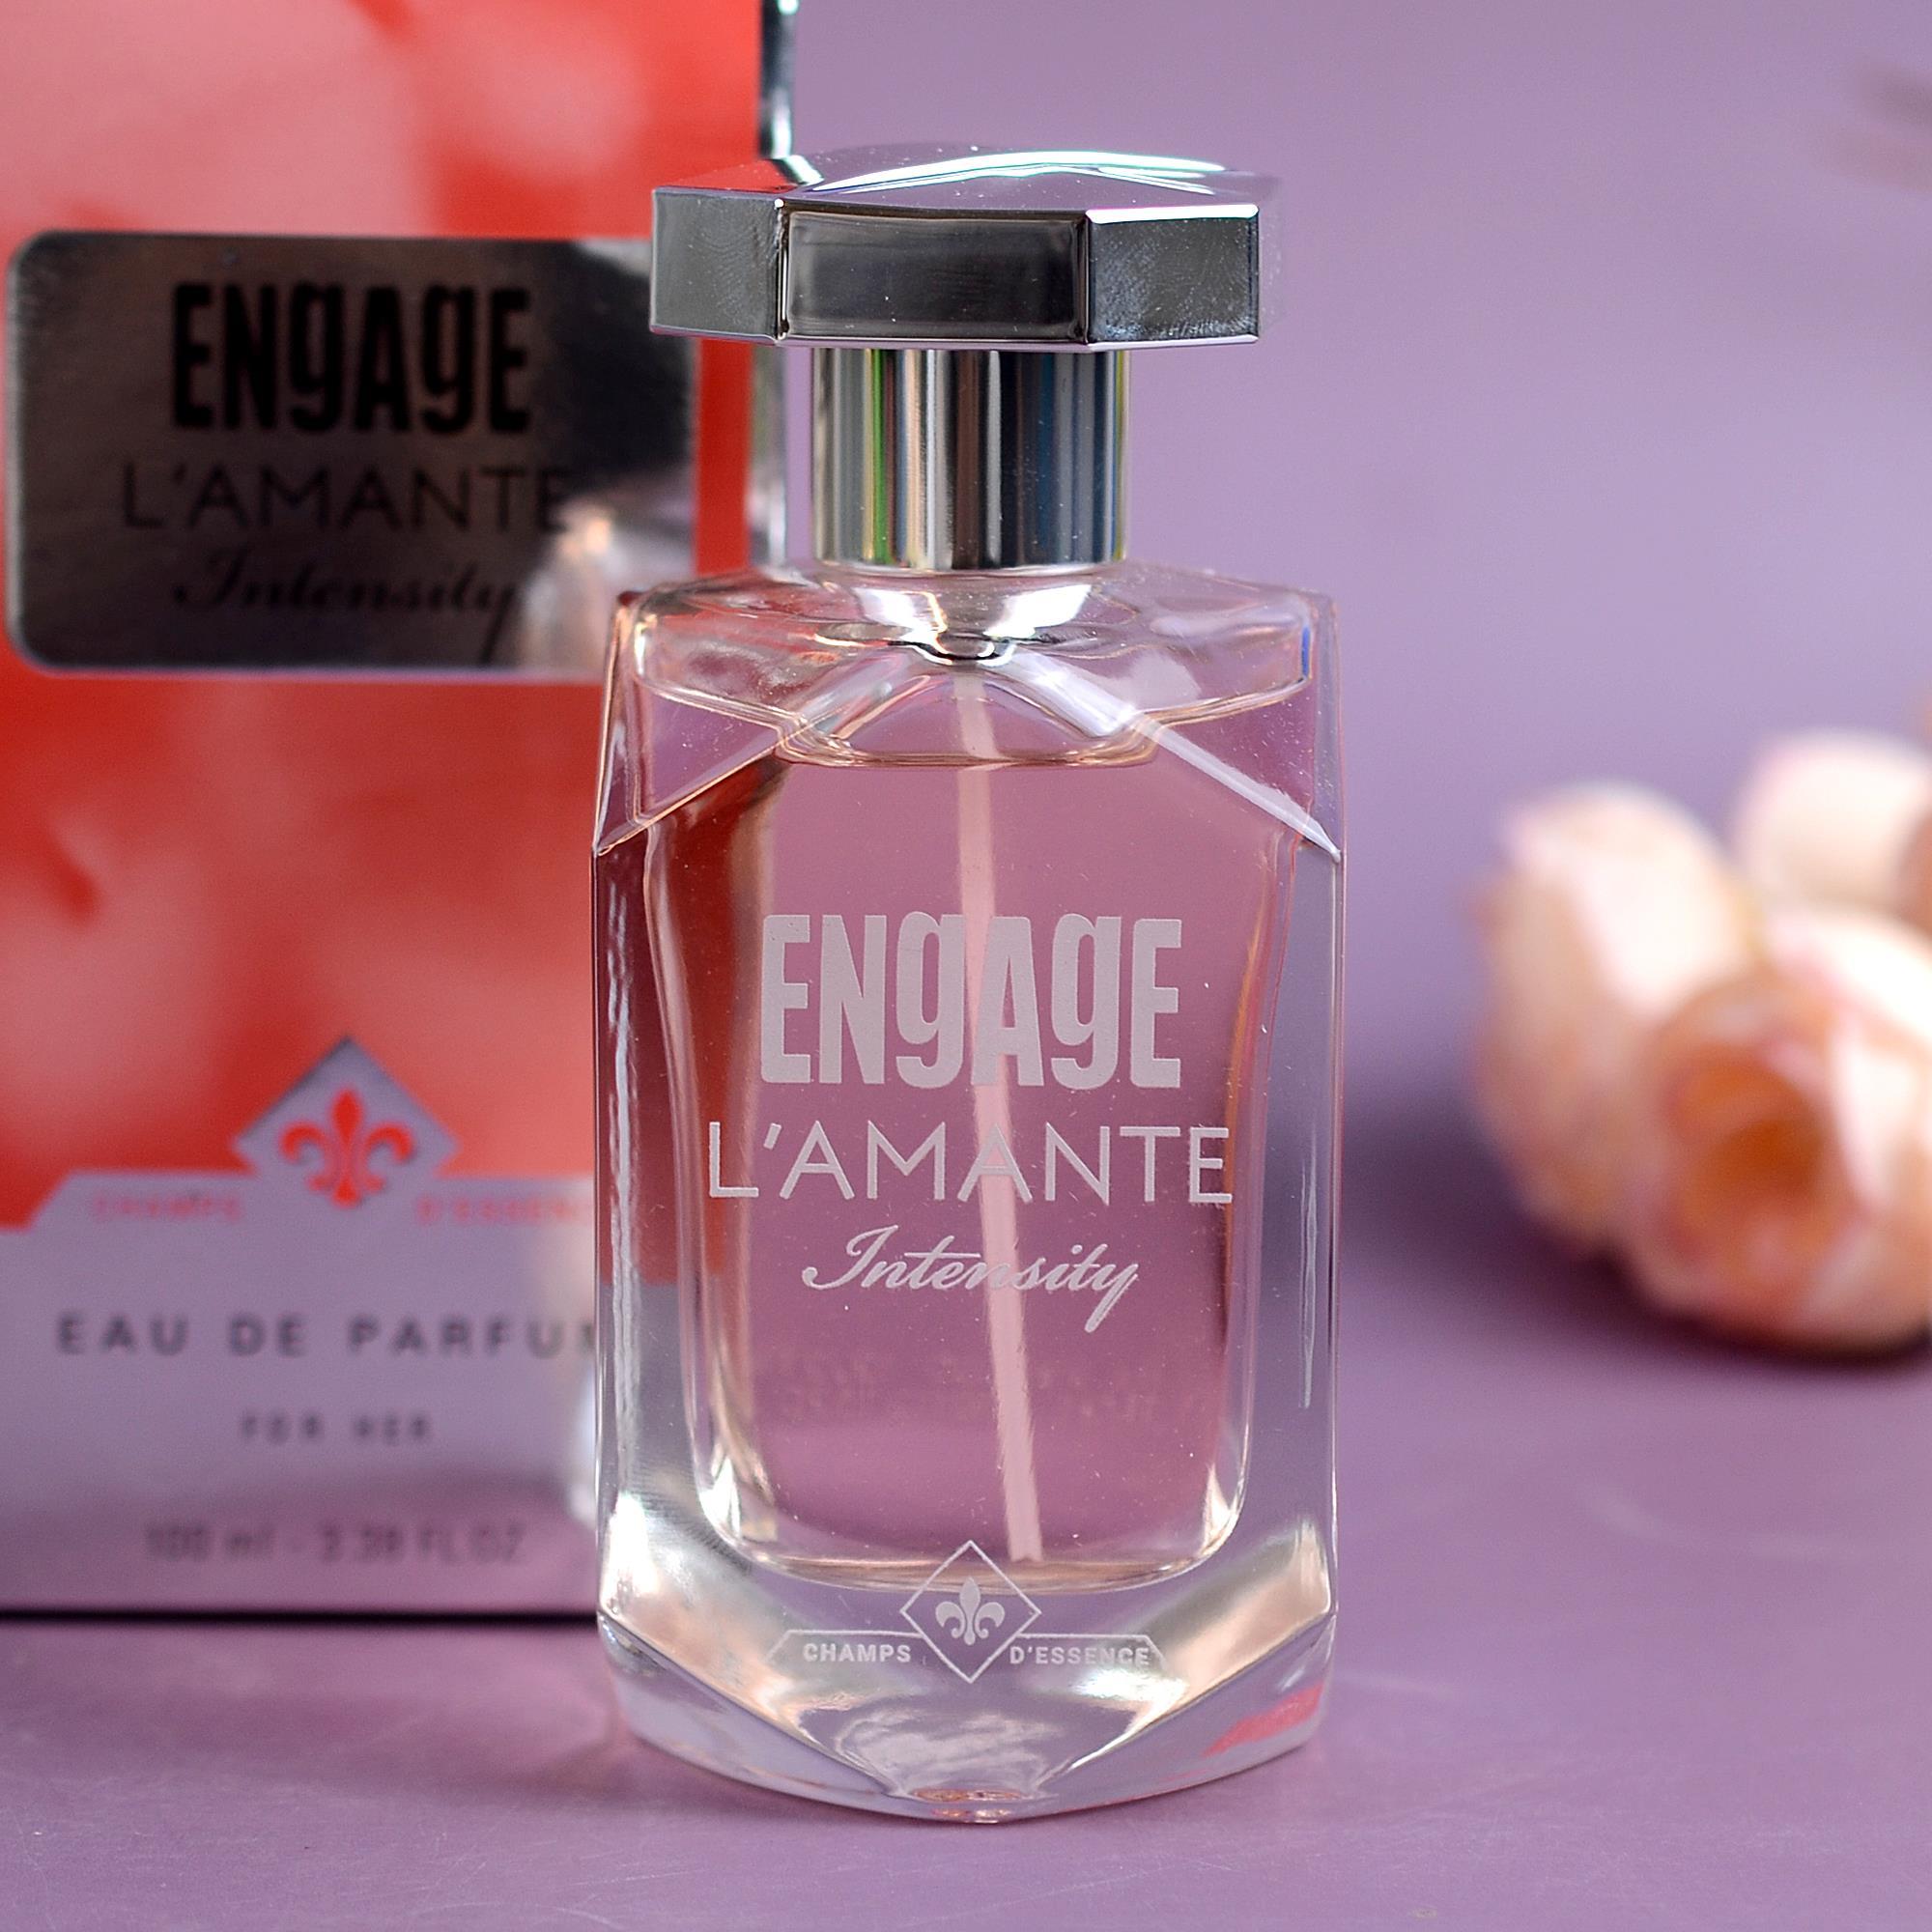 Engage L'amante Intensity Eau De Parfum for Women, Woody, Long Lasting, 100  ml